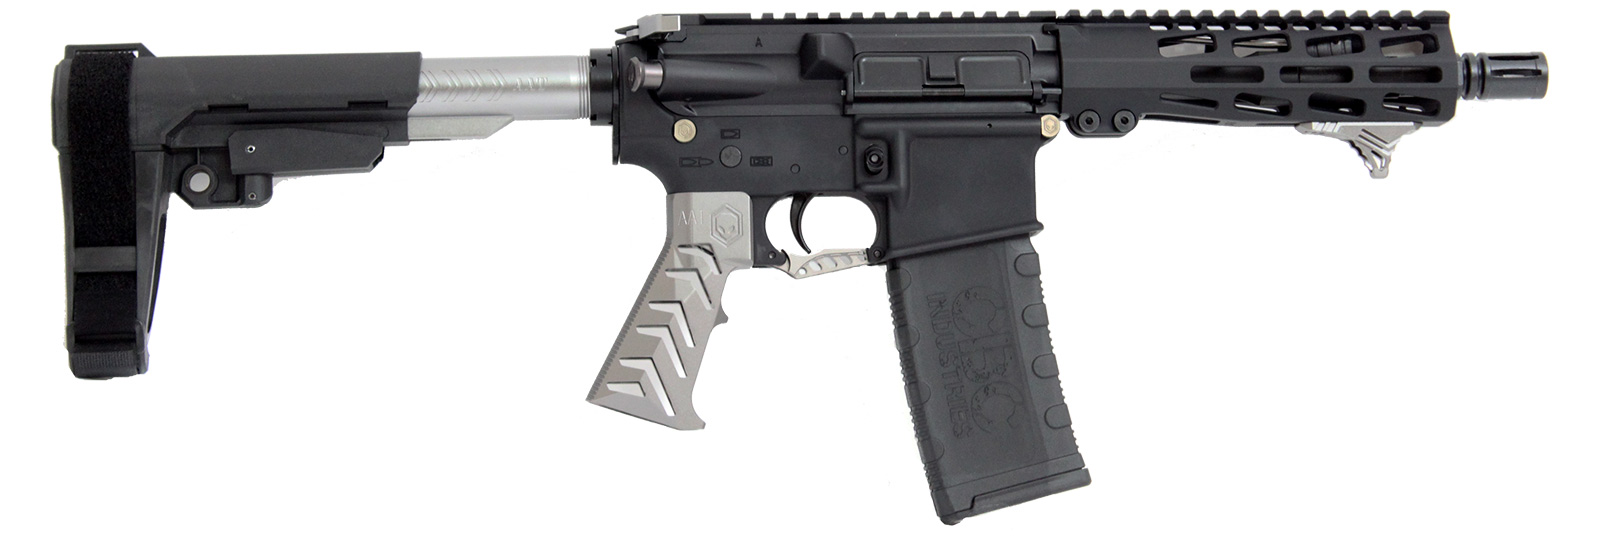 cbc-ps2-forged-aluminum-ar-pistol-alien-grey-223-wylde-7-5″-barrel-m-lok-rail-sba3-brace